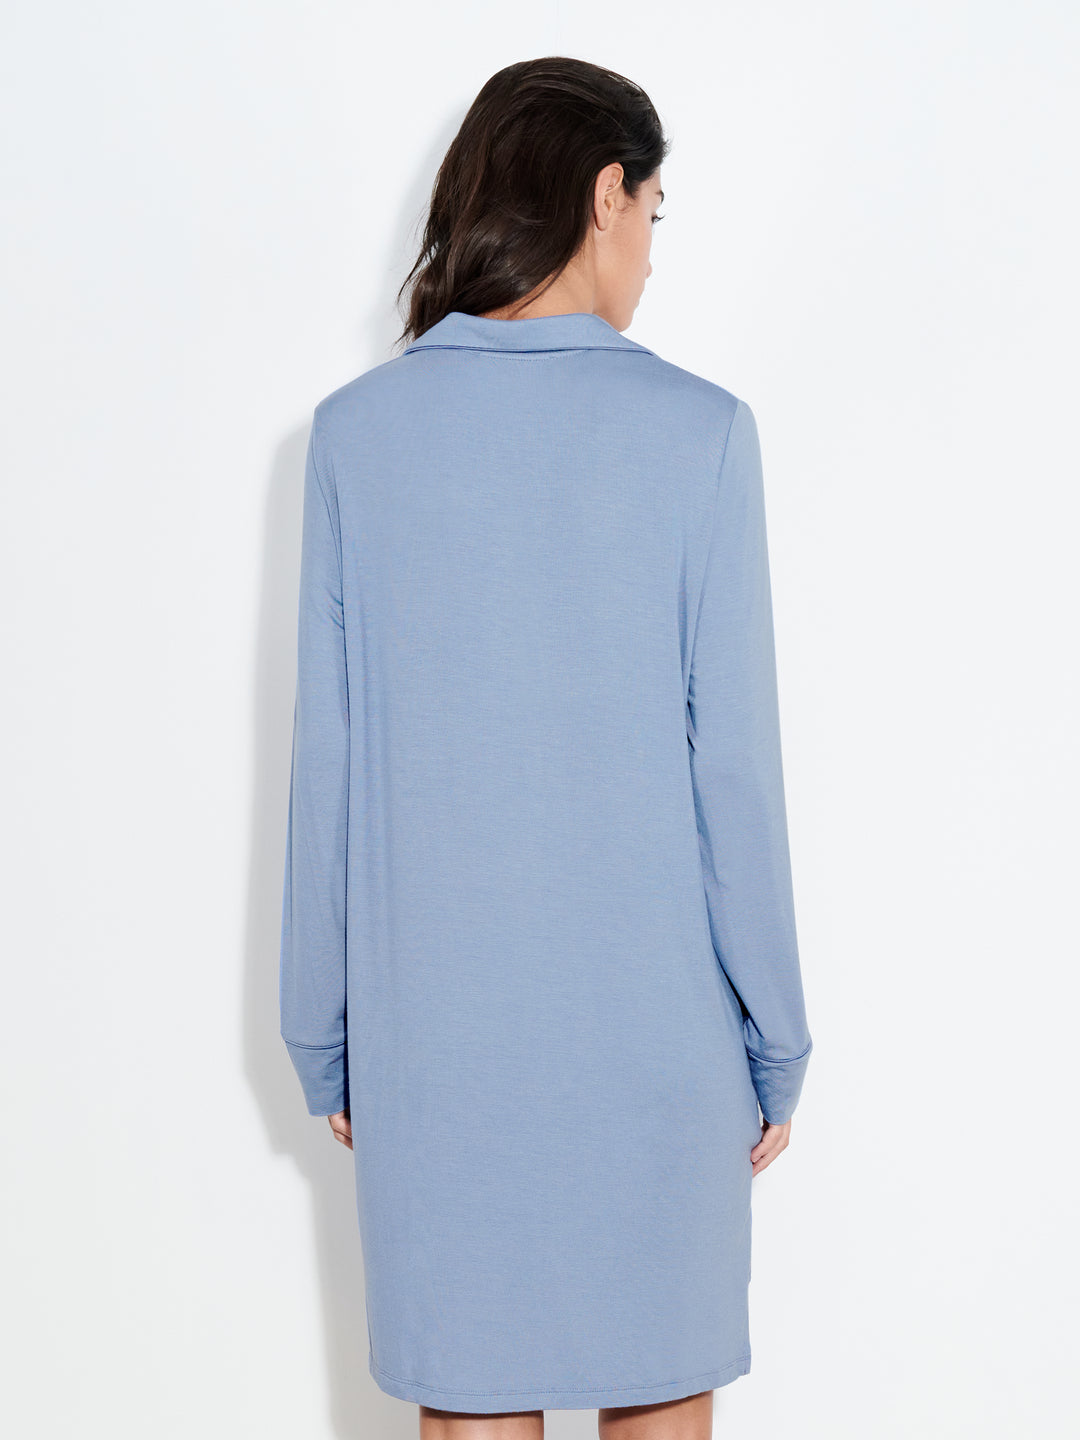 Femilet - Ночная рубашка Daisy с длинными рукавами, синяя Борнео